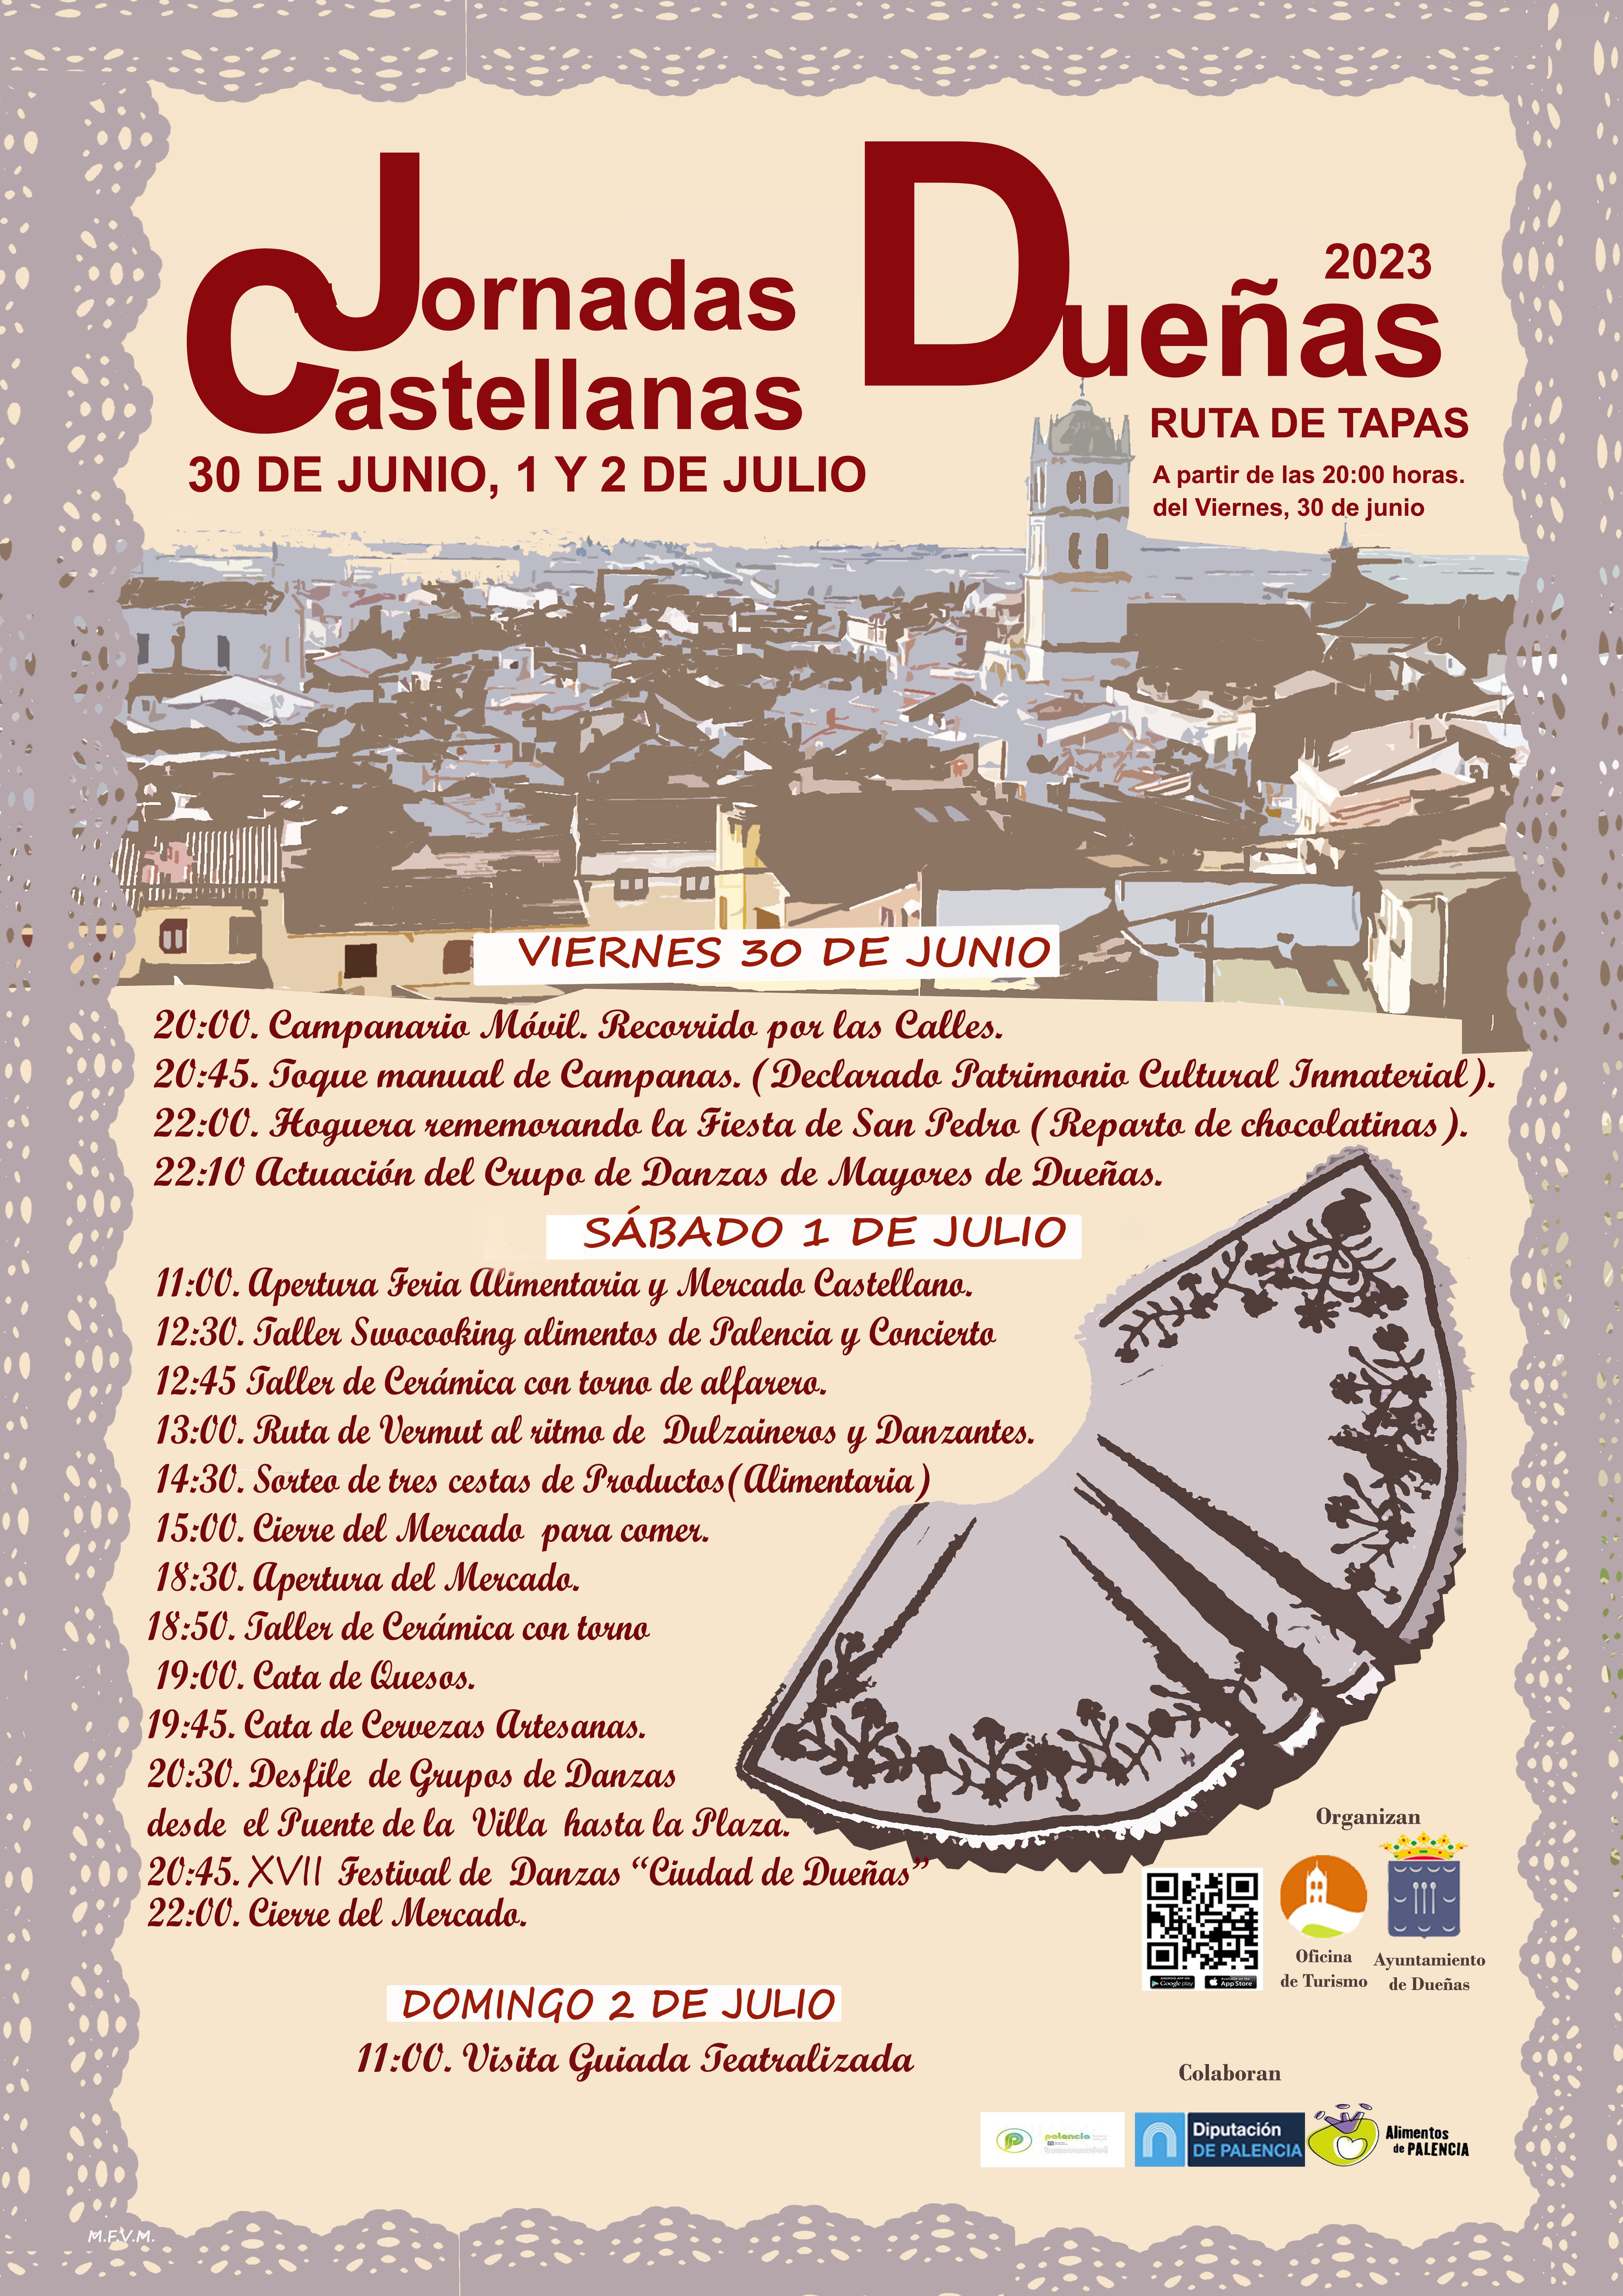 Jornadas Castellanas: 30 de junio, 1 y 2 de julio.